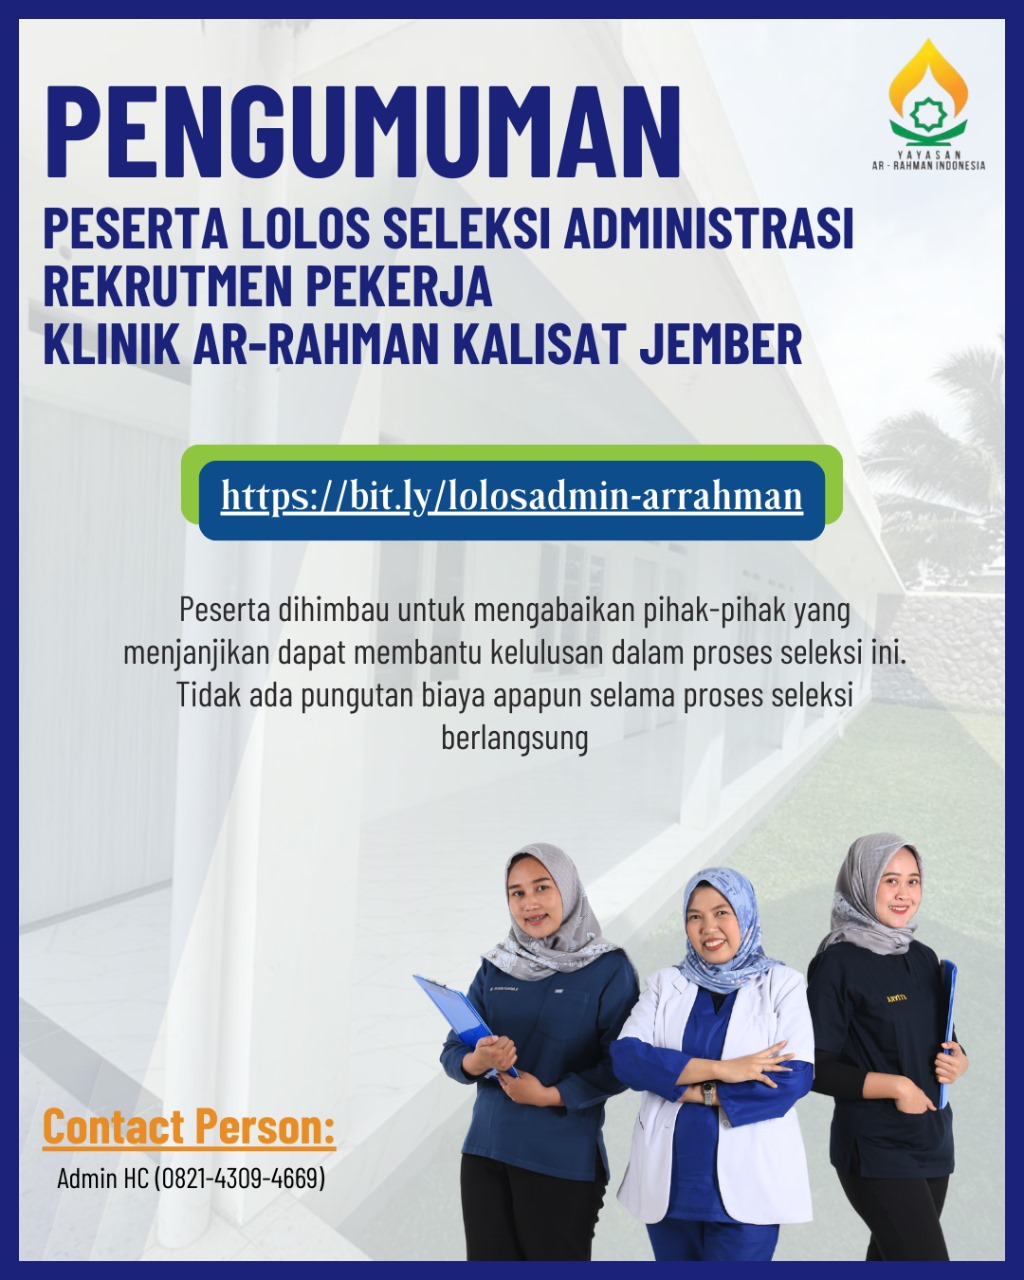 You are currently viewing Pengumuman Peserta Lolos Seleksi Administrasi Rekrutmen Pekerja Klinik ArRahman Kalisat Jember